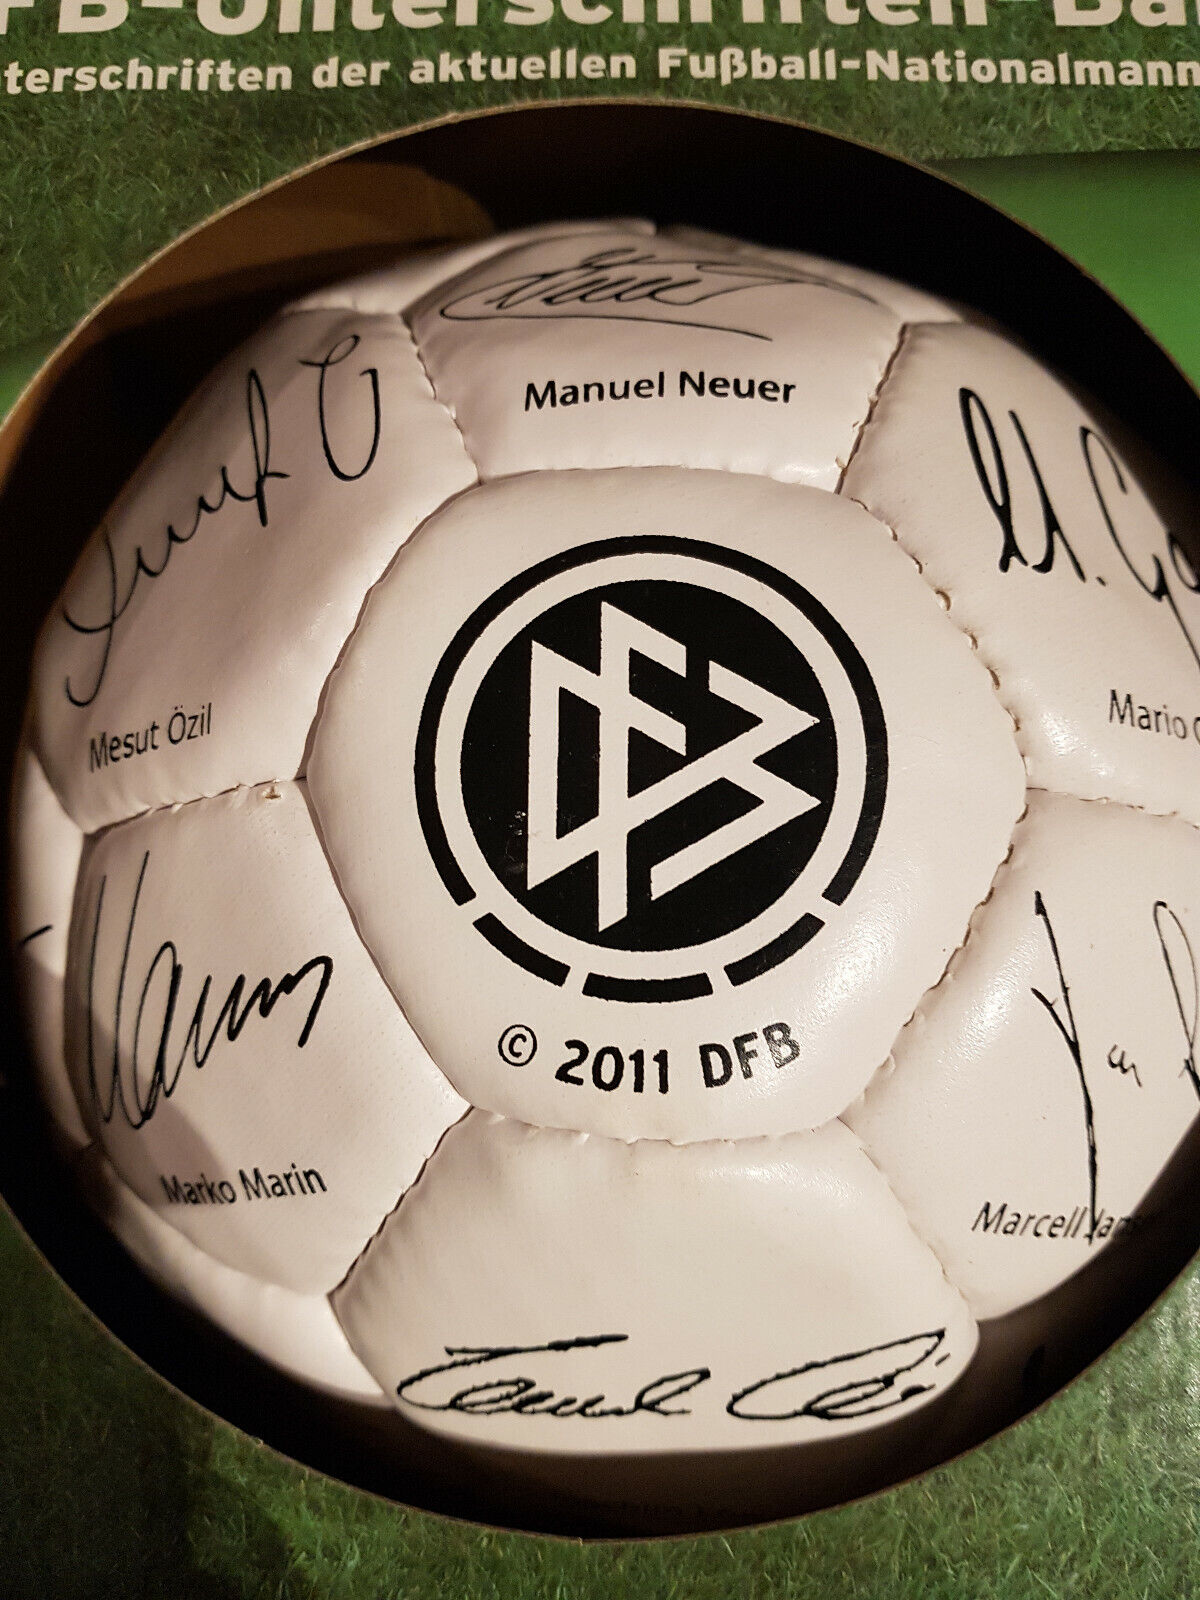 DFB-Unterschriften-Ball 2011 NEU (Podolski, Schweinsteiger, Neuer, Özil)